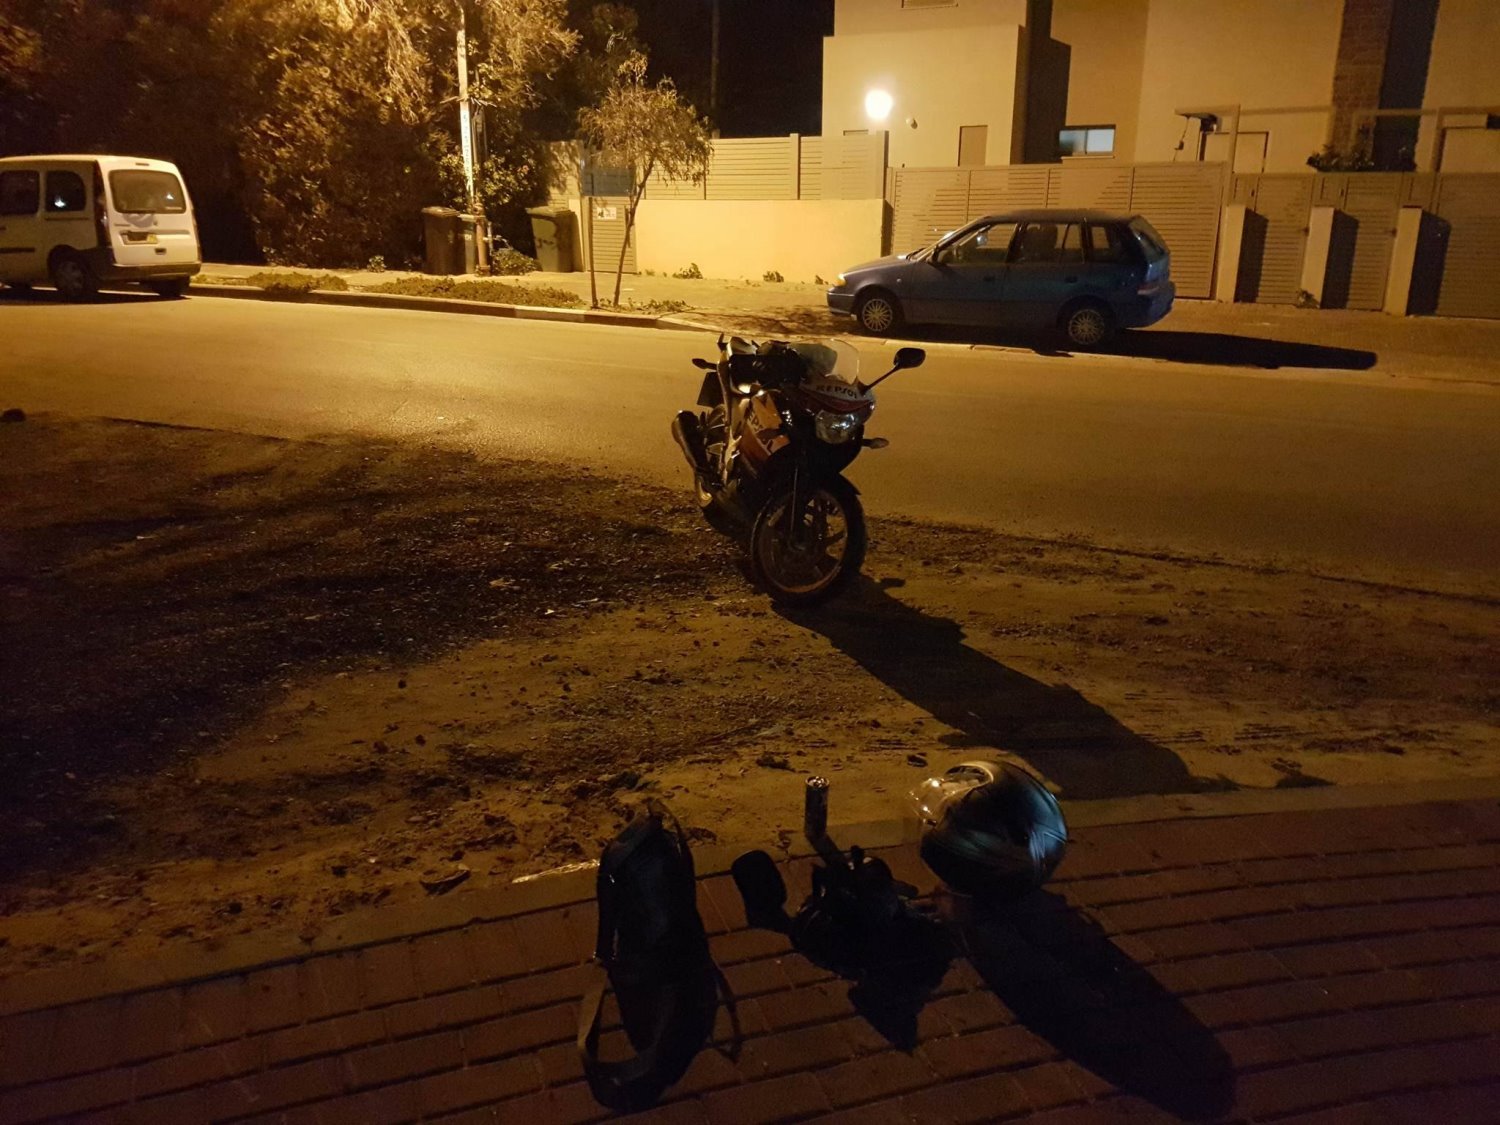 האופנוע לאחר התאונה